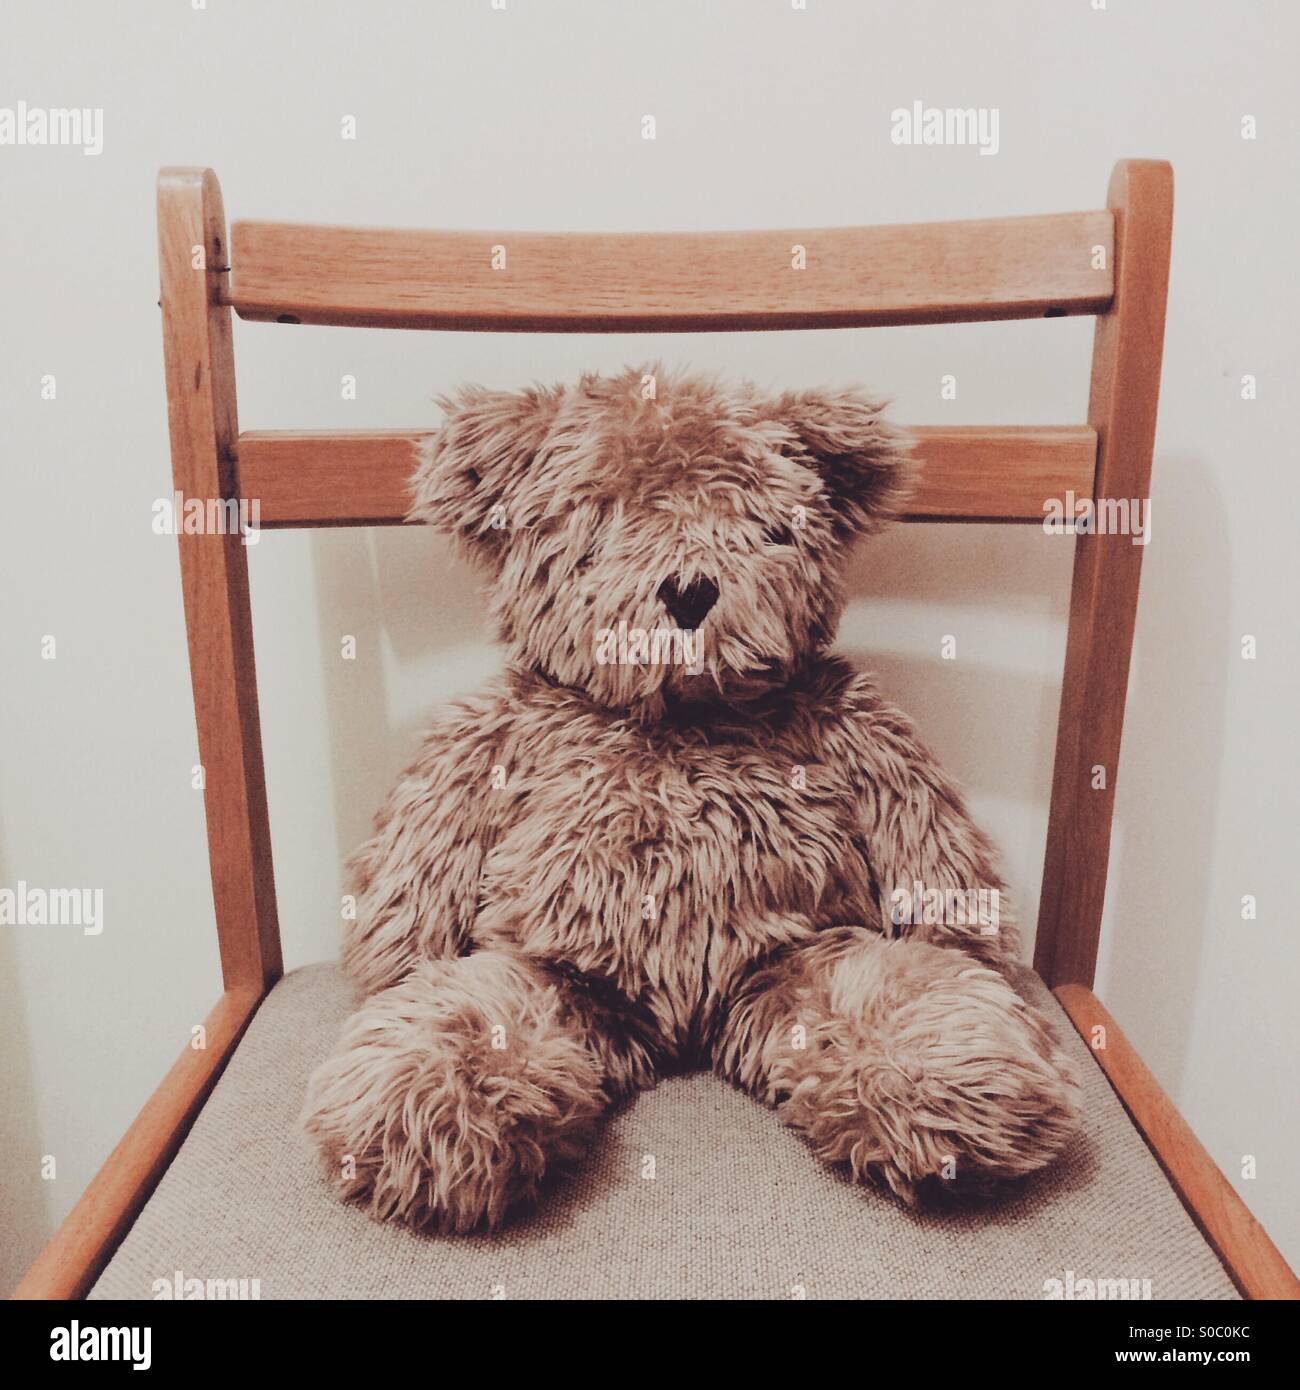 Teddy bear on a chair. Stock Photo